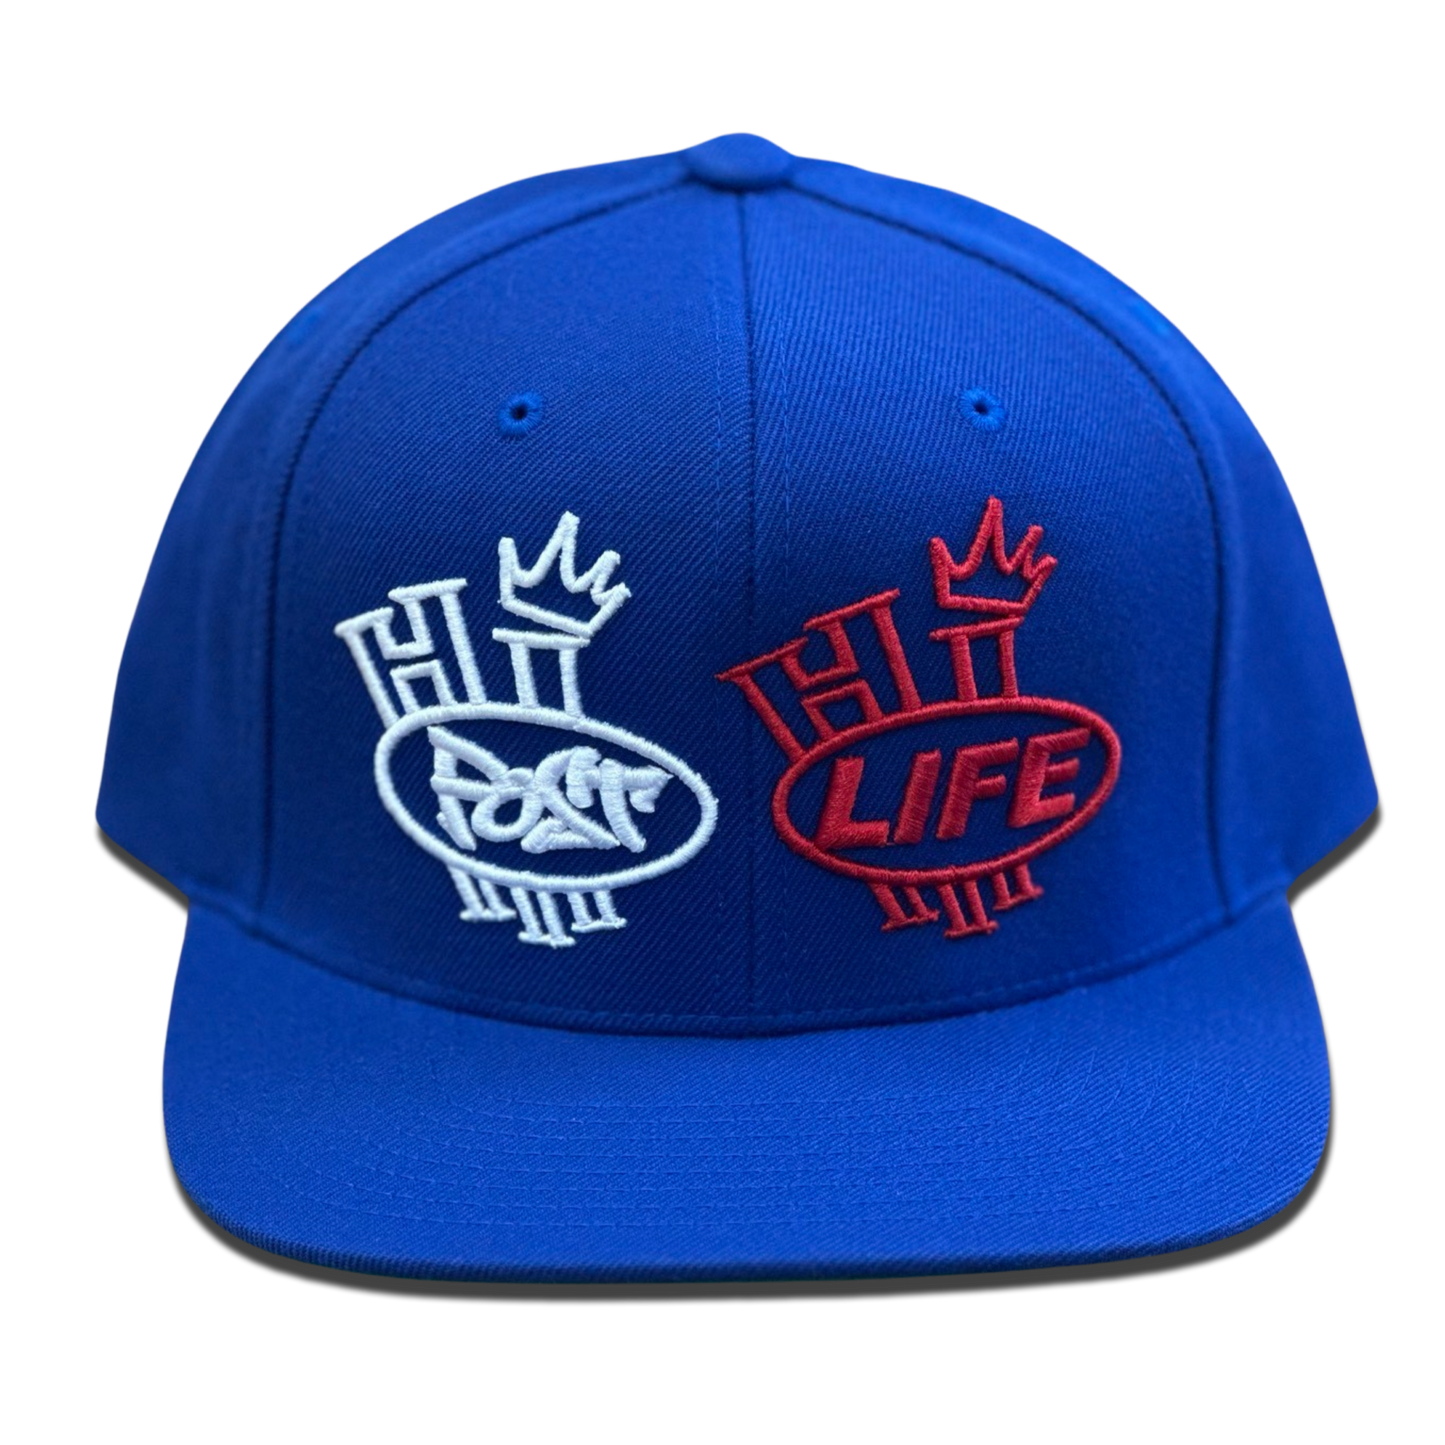 HI POST X HI LIFE Snapback cap (6 colors)